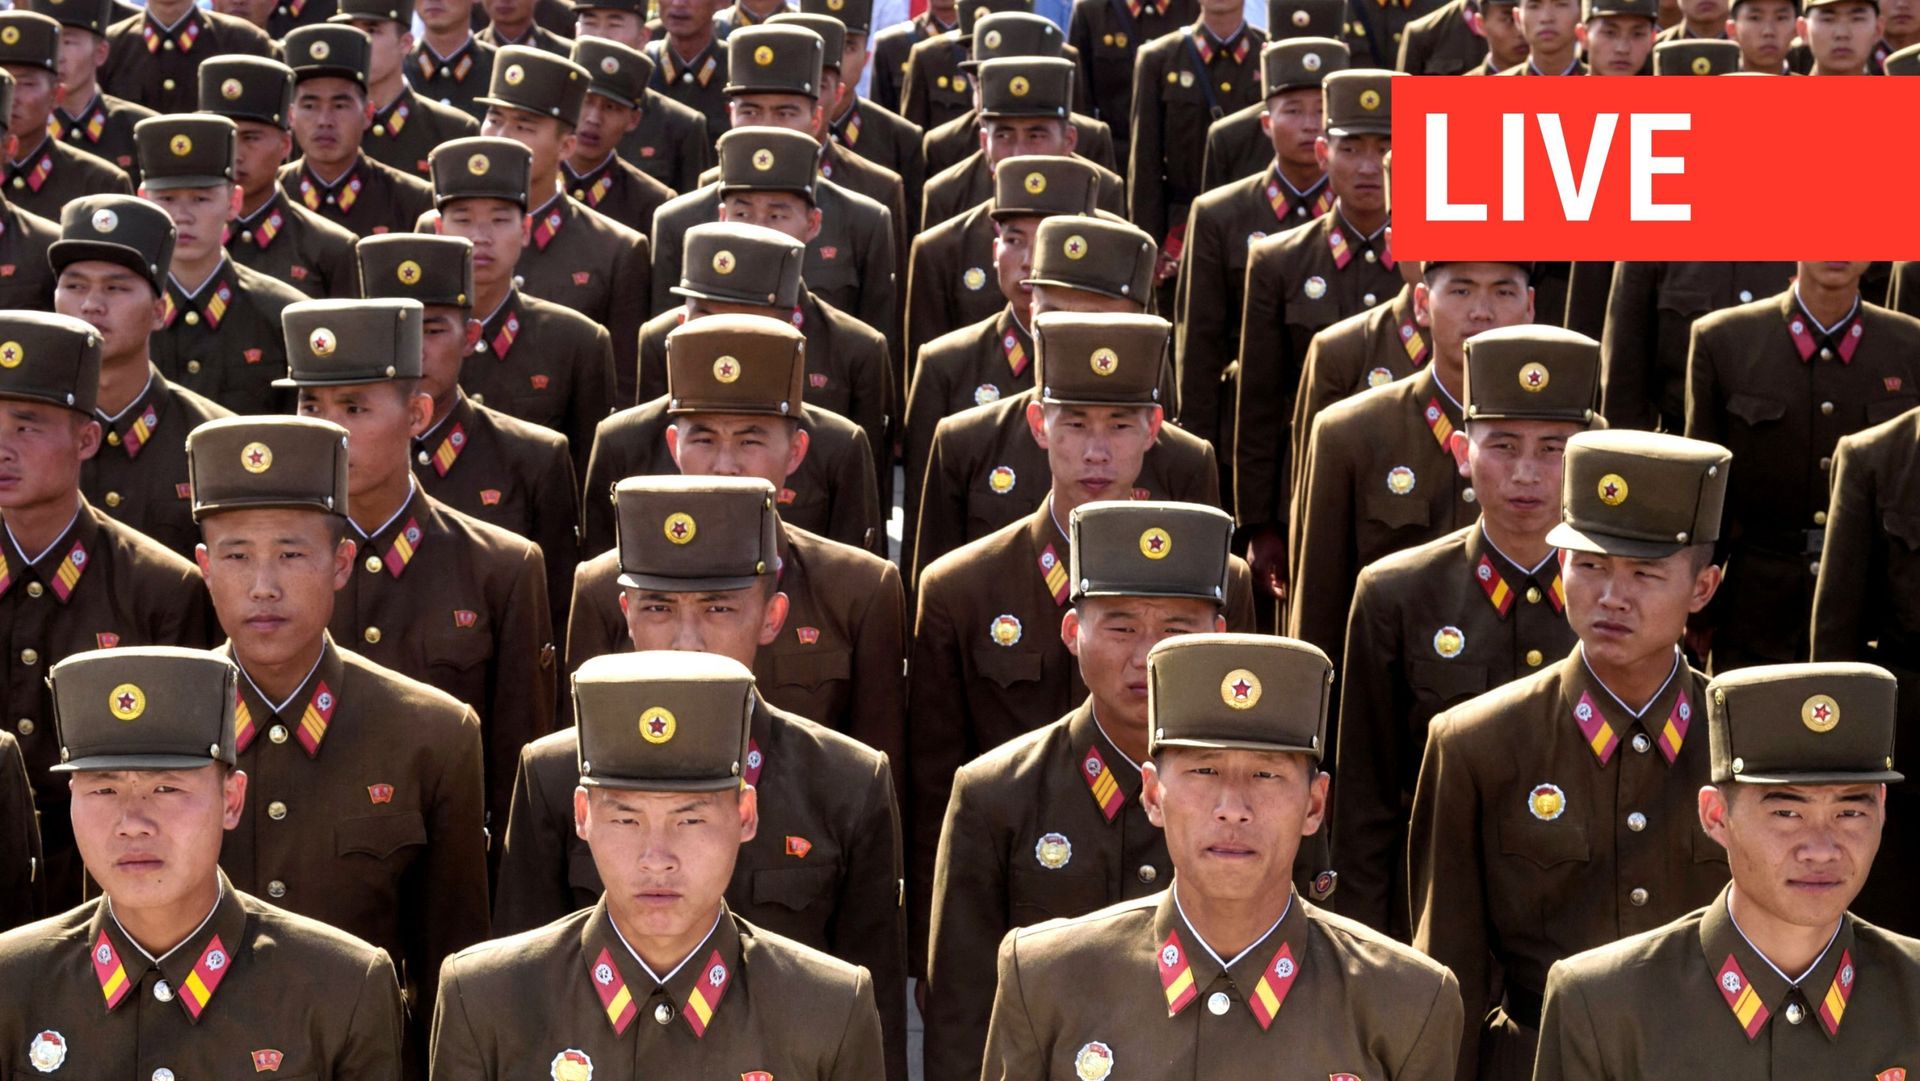 Les soldats de l’Armée populaire coréenne (APK) attendent de rendre hommage devant les statues des dirigeants nord-coréens décédés Kim Il Sung et Kim Jong Il.